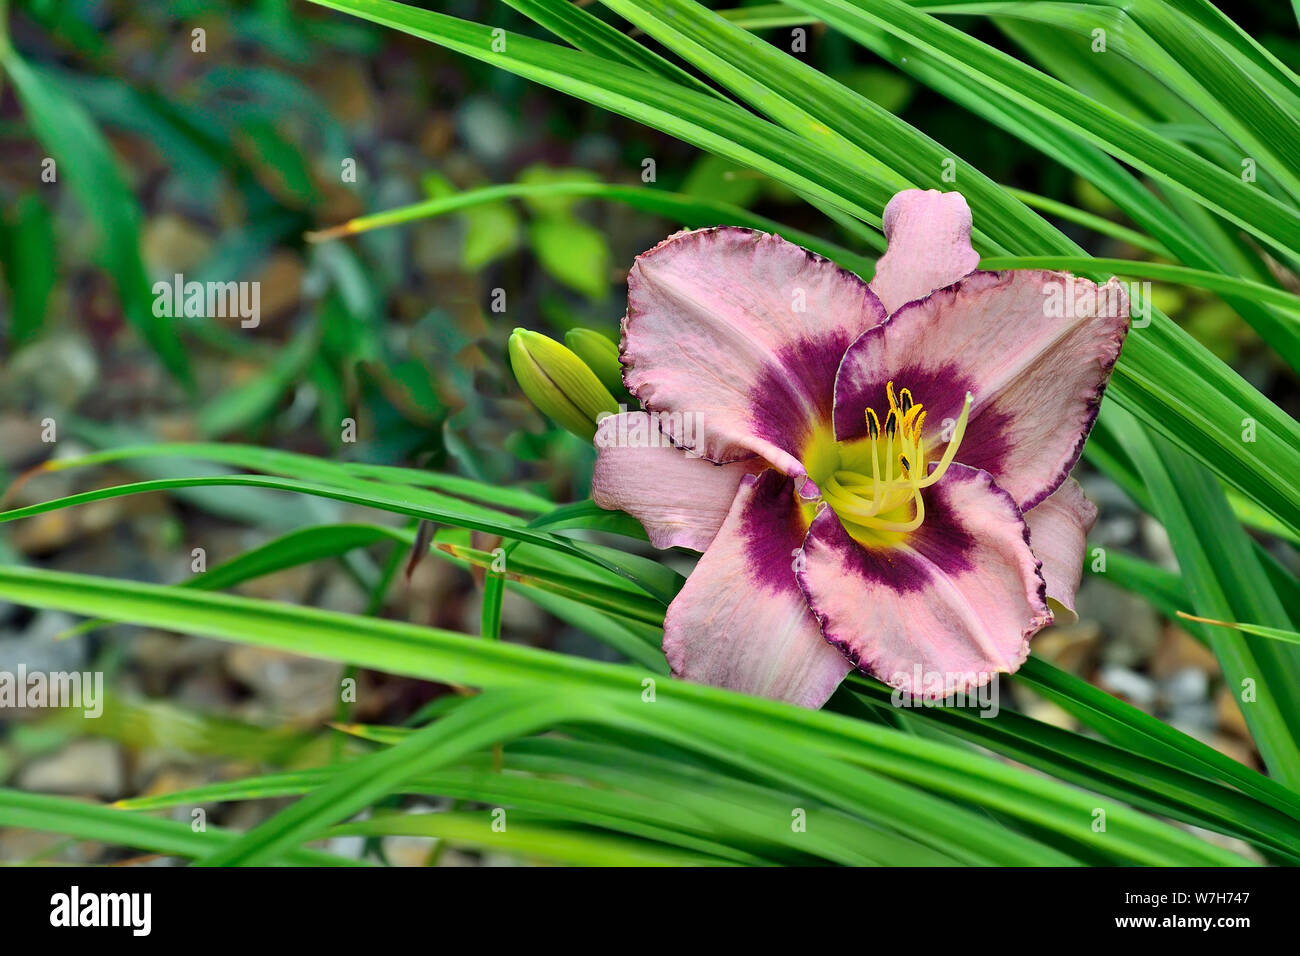 Schöne blühende Rosa mit lila Tag Lily oder Hemerocallis Nahaufnahme im Sommergarten. Zarte Blume mit Blättern. Gartenbau, Blumenzucht und Stockfoto